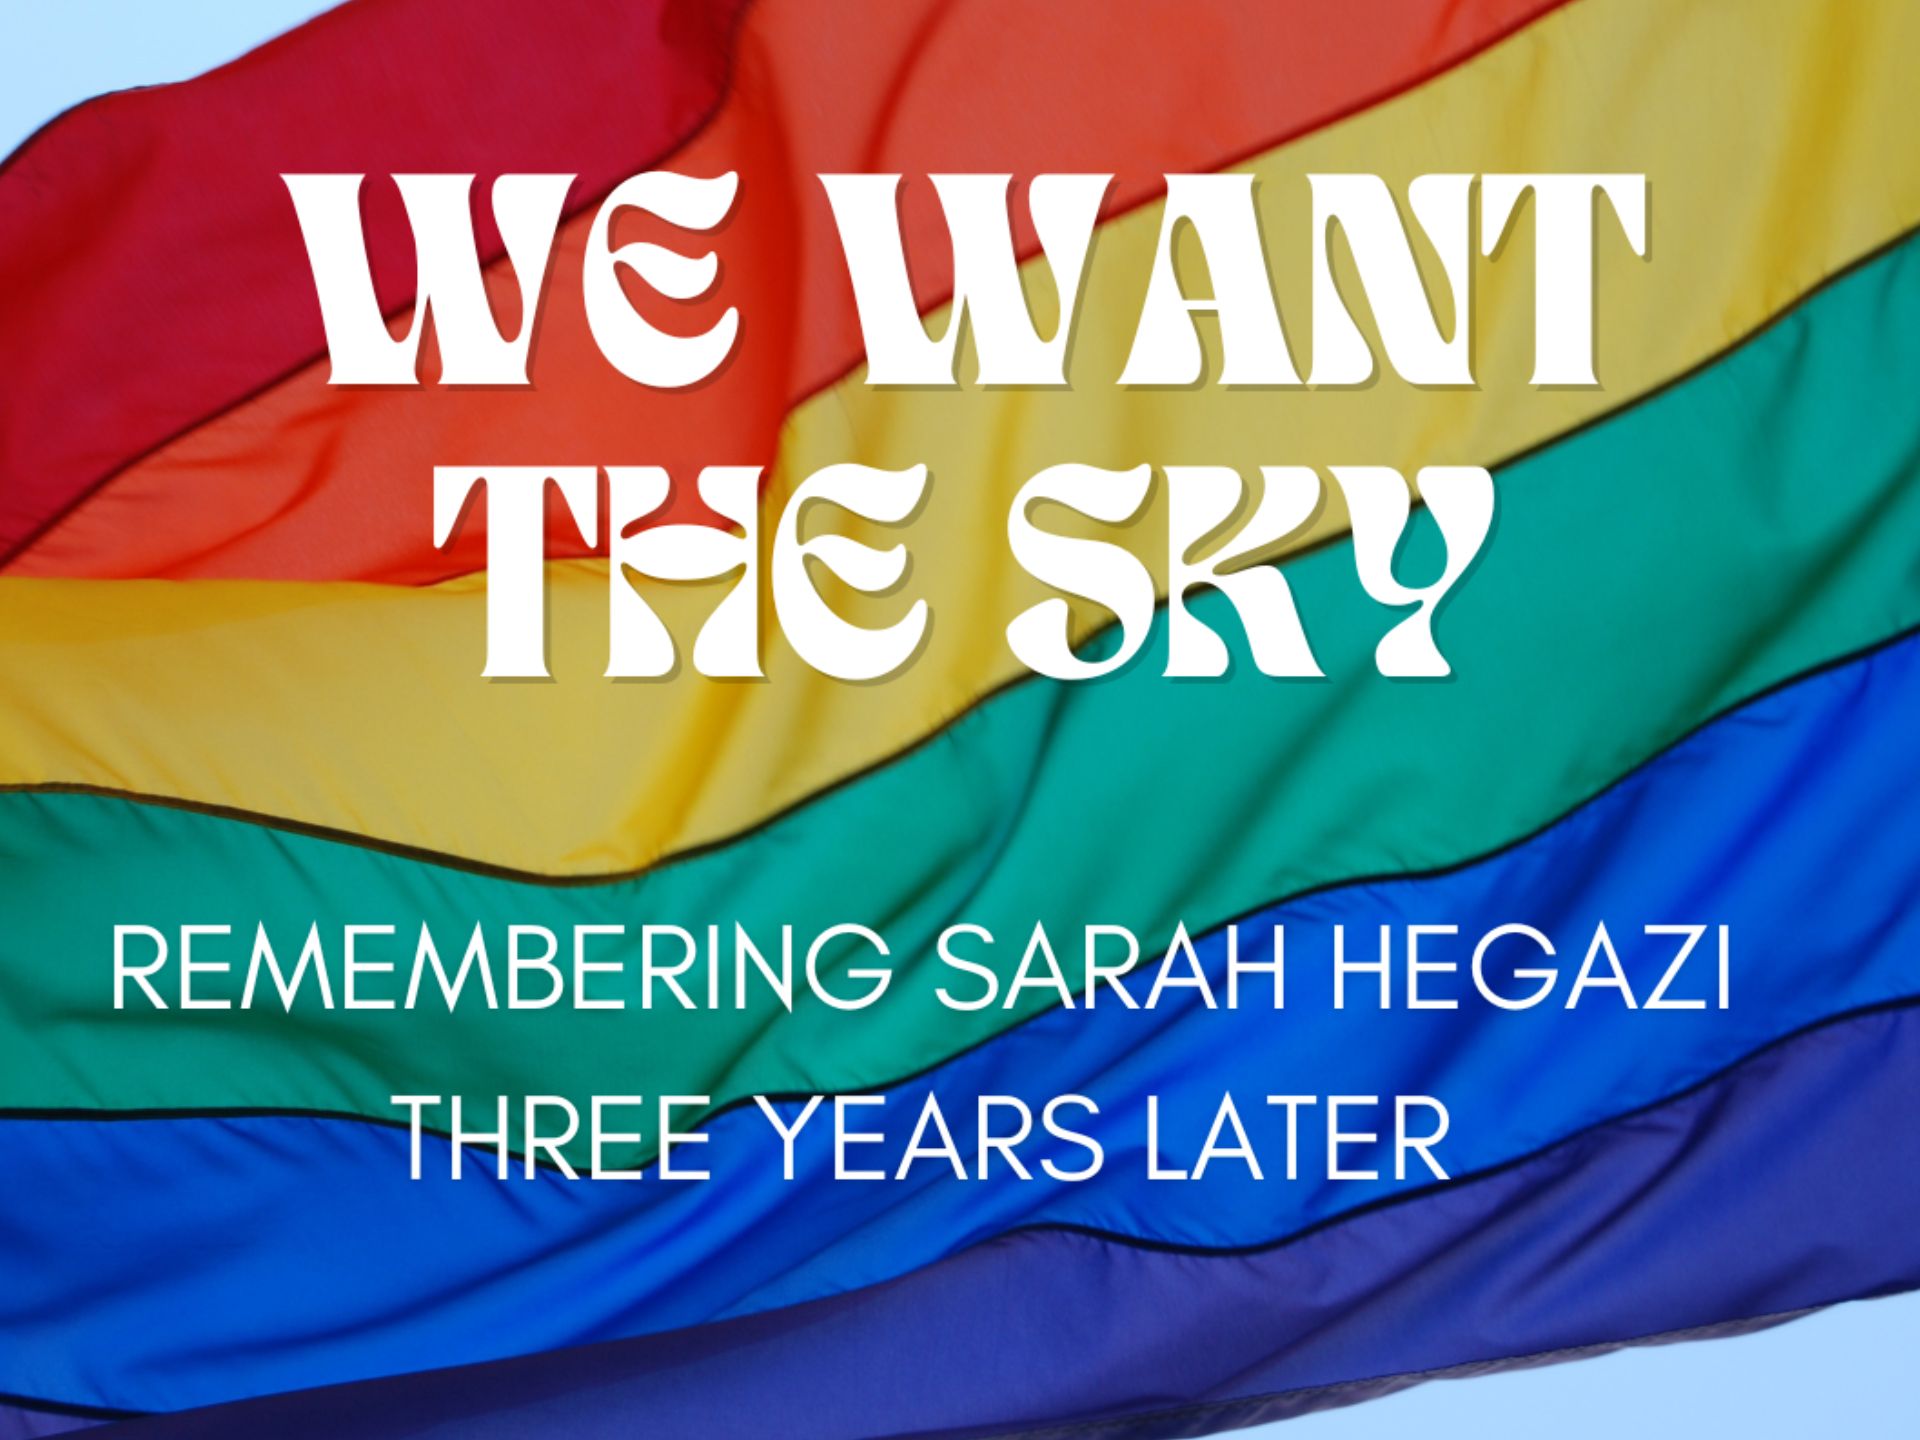 Nous voulons le ciel - Se souvenir de Sarah Hegazi trois ans plus tard